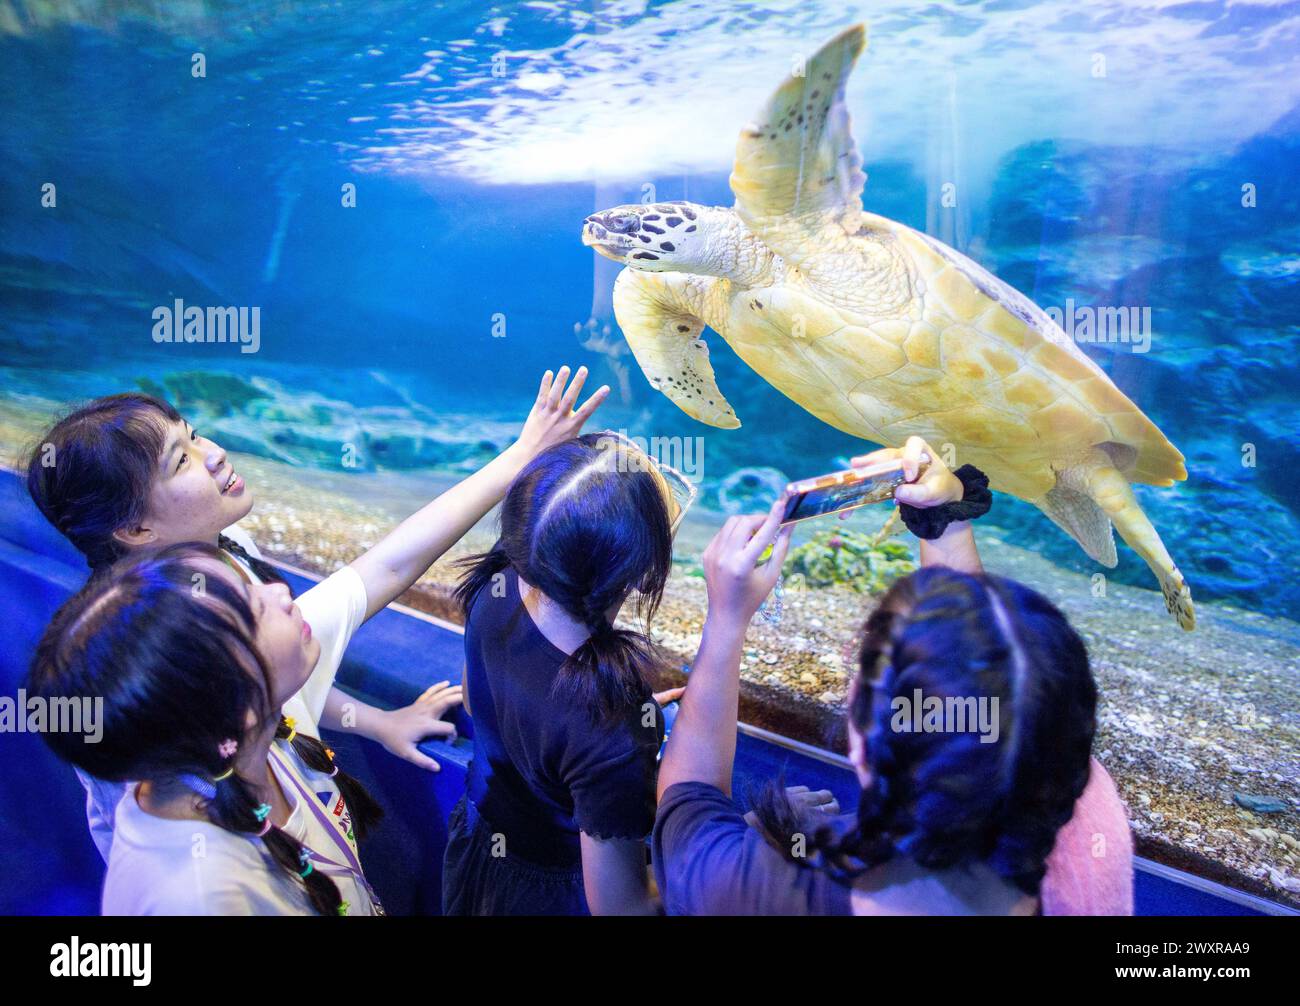 Los visitantes ven nadar a una tortuga marina en el zoológico acuario de Chiang Mai, en Chiang Mai. El acuario del zoológico de Chiang Mai hay un túnel subterráneo en el edificio que es un túnel de agua dulce y un túnel de mar y está conectado entre sí por camino de auto-caminar y es el más largo en el sudeste de Asia y la longitud total es de 133 metros. La longitud del túnel de mar es de 66,5 metros y el túnel de agua dulce es de 66,5 metros. El acuario zoológico de Chiang Mai reabrió sus puertas a los turistas el 1 de abril después de más de un año de renovación, se realizó una inversión de casi 30 millones de baht para reformar tanto el exterior como el interior del edificio. La A Foto de stock